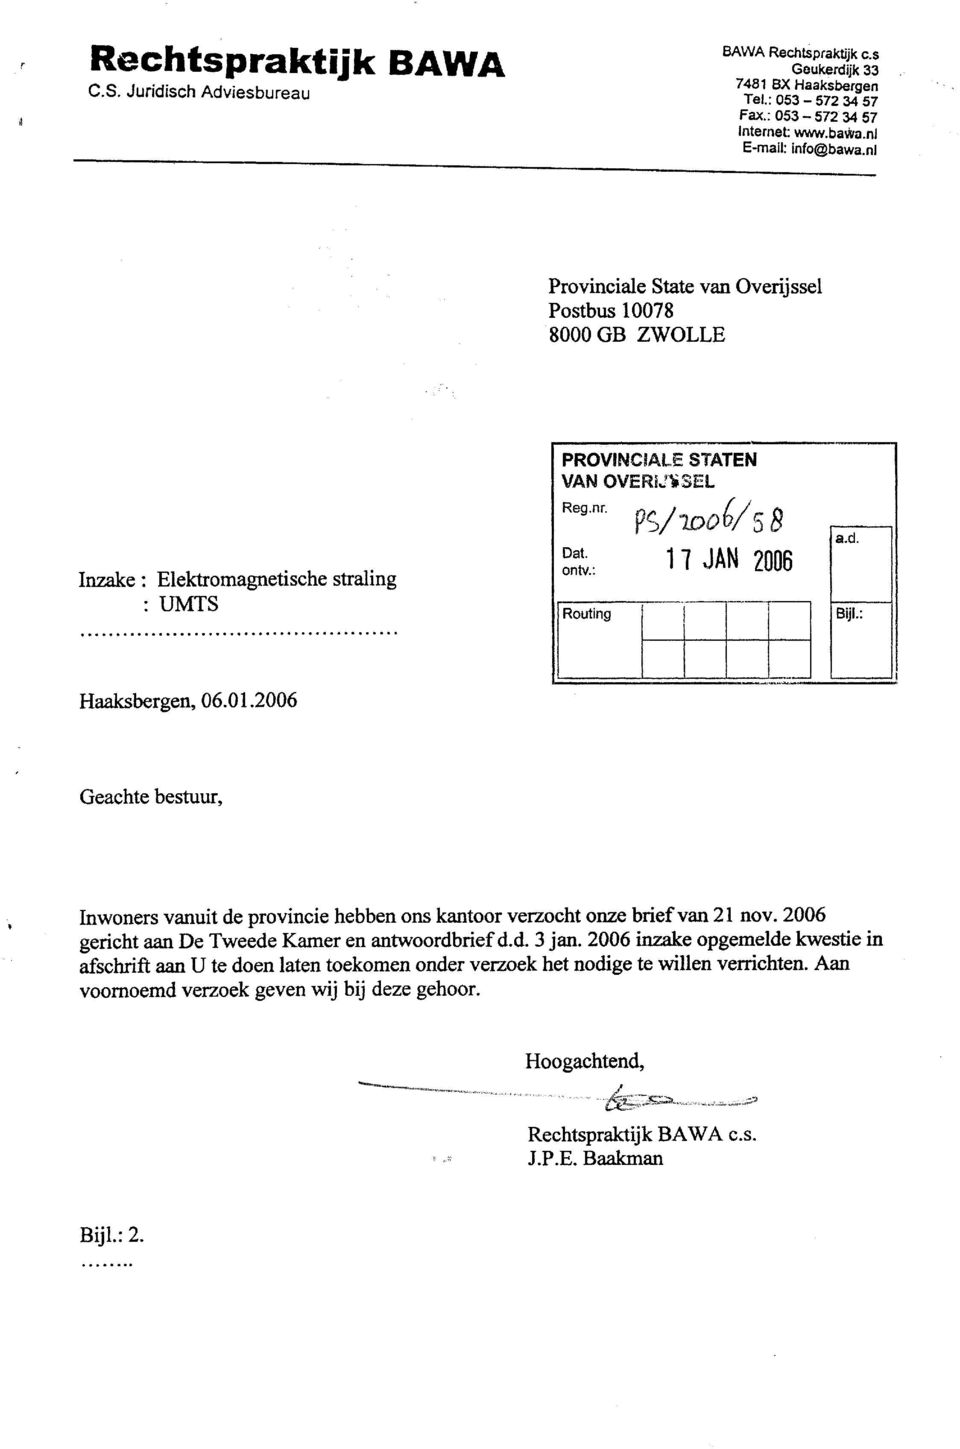 BijL: Haaksbergen, 06.01.2006 Geachte bestuur, Inwoners vanuit de provincie hebben ons kantoor verzocht onze brief van 21 nov. 2006 gericht aan De Tweede Kamer en antwoordbrief d.d. 3 Jan.